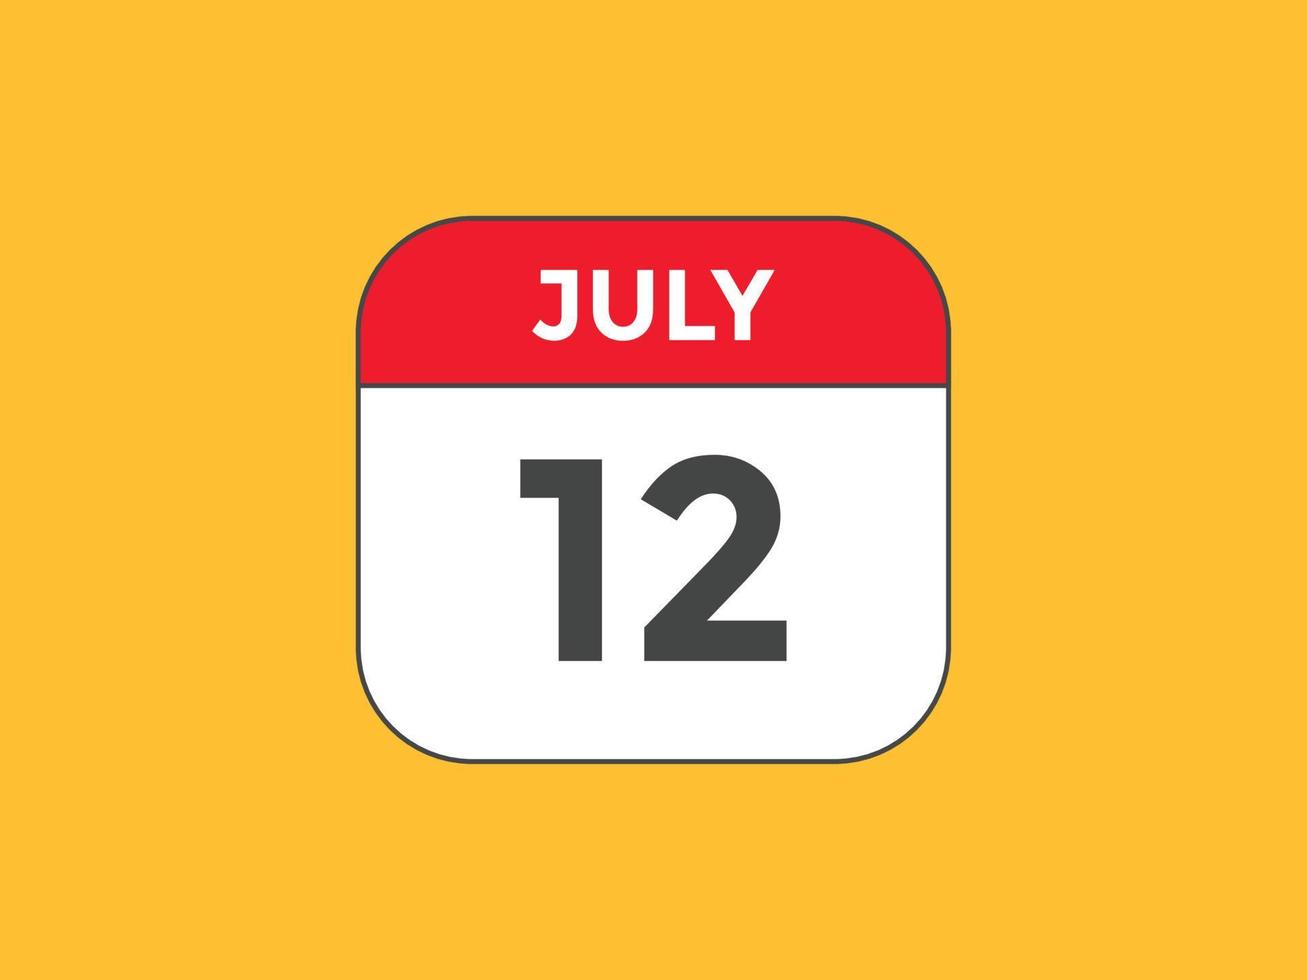 rappel du calendrier du 12 juillet. Modèle d'icône de calendrier quotidien du 12 juillet. modèle de conception d'icône calendrier 12 juillet. illustration vectorielle vecteur